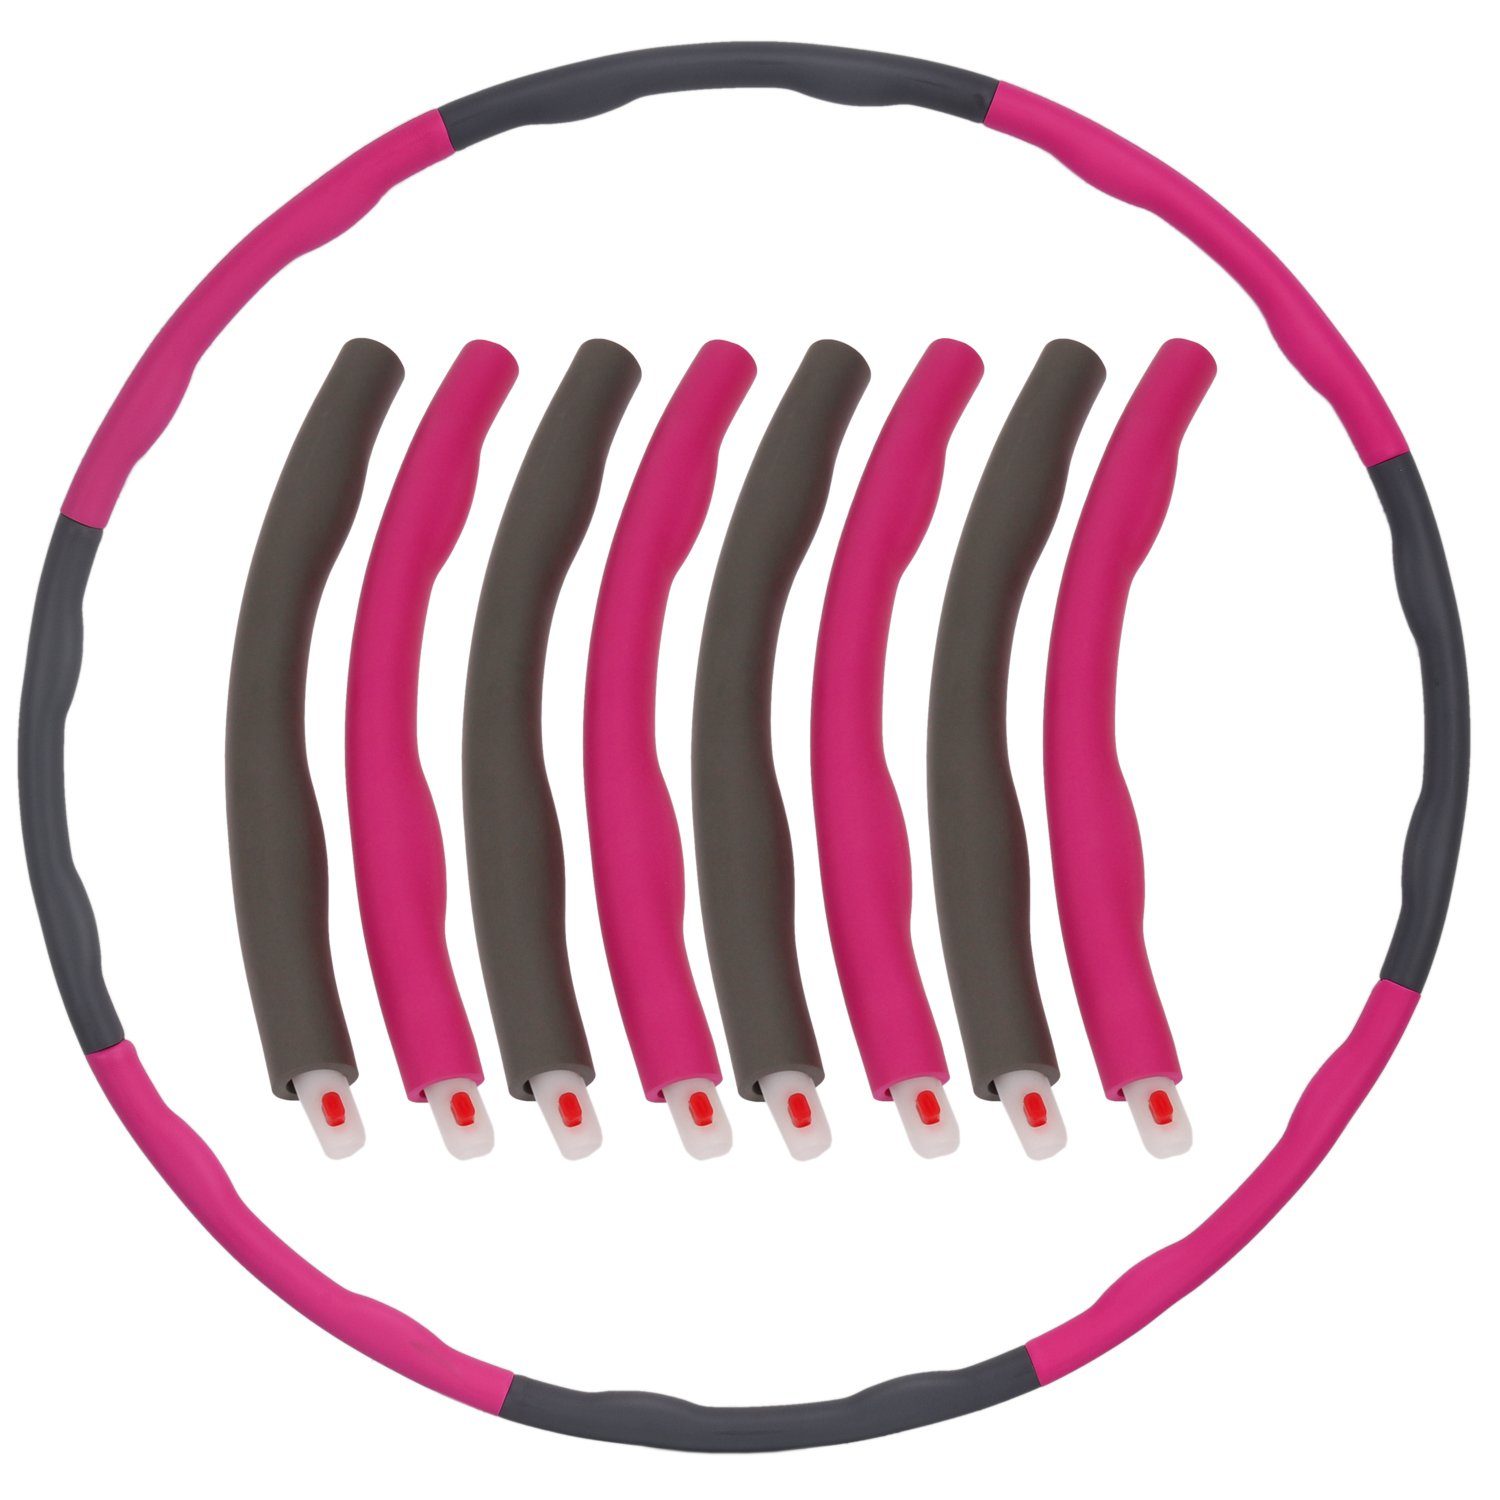 FunTomia Hula-Hoop-Reifen Hula Hoop Reifen Pink-Grau Bauchmuskeln + steckbaren Hulla Trainieren Anfänger HUP Hullahub 6-8 Abnehmen Fitness zum mit Soft-Elementen, zum Training, Fortgeschrittene der Erwachsene für Hop Hoola für